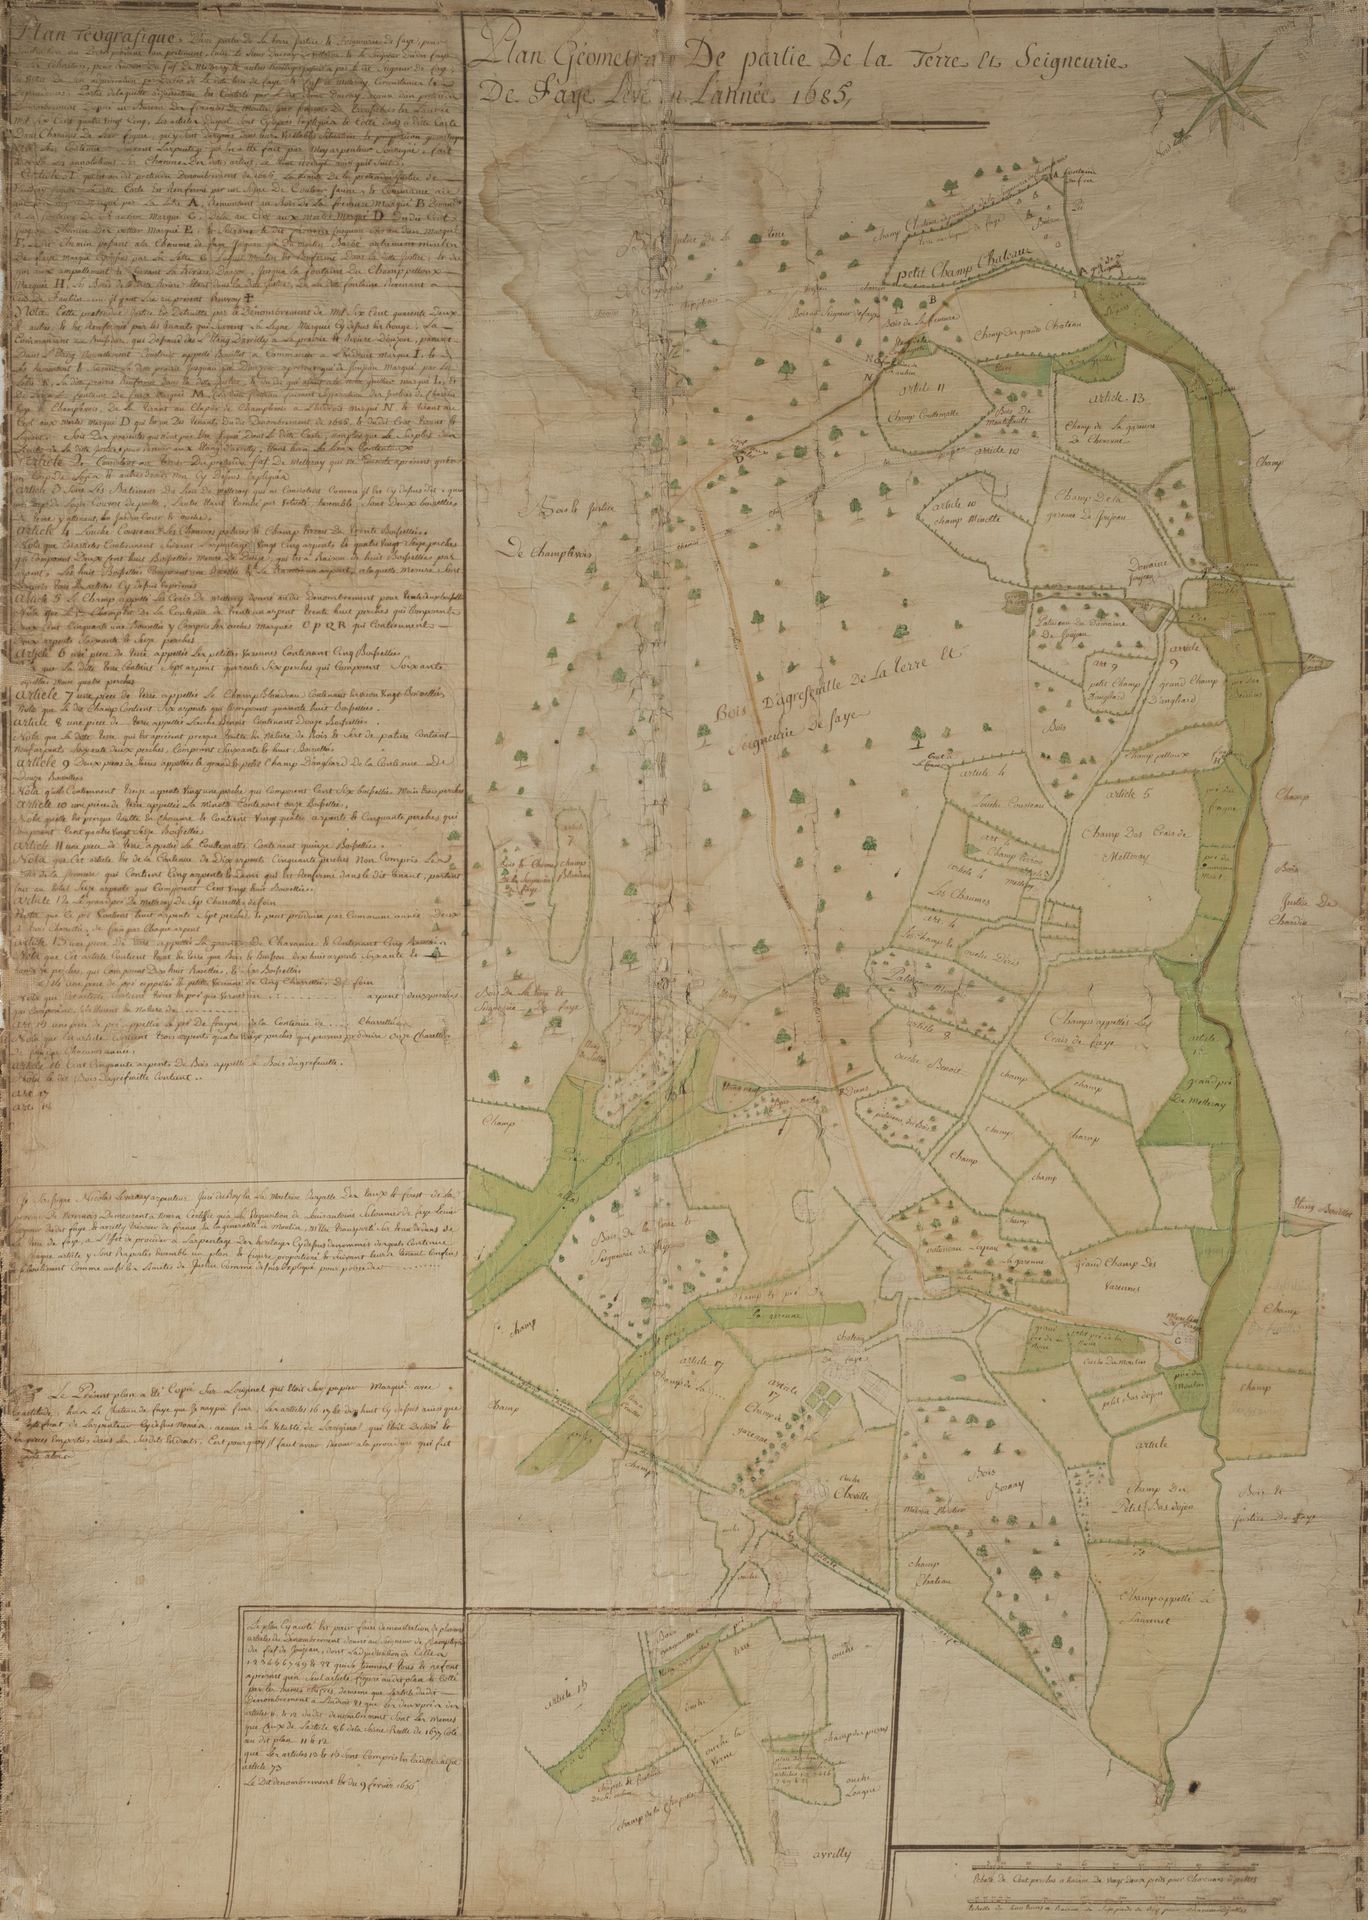 Null 尼韦尔奈斯。 
1685年测量的法伊部分土地和领地的几何图，钢笔和水彩画
水彩画，贴在画布上的纸上。 
17世纪末或18世纪初。 
高度：111111&hellip;